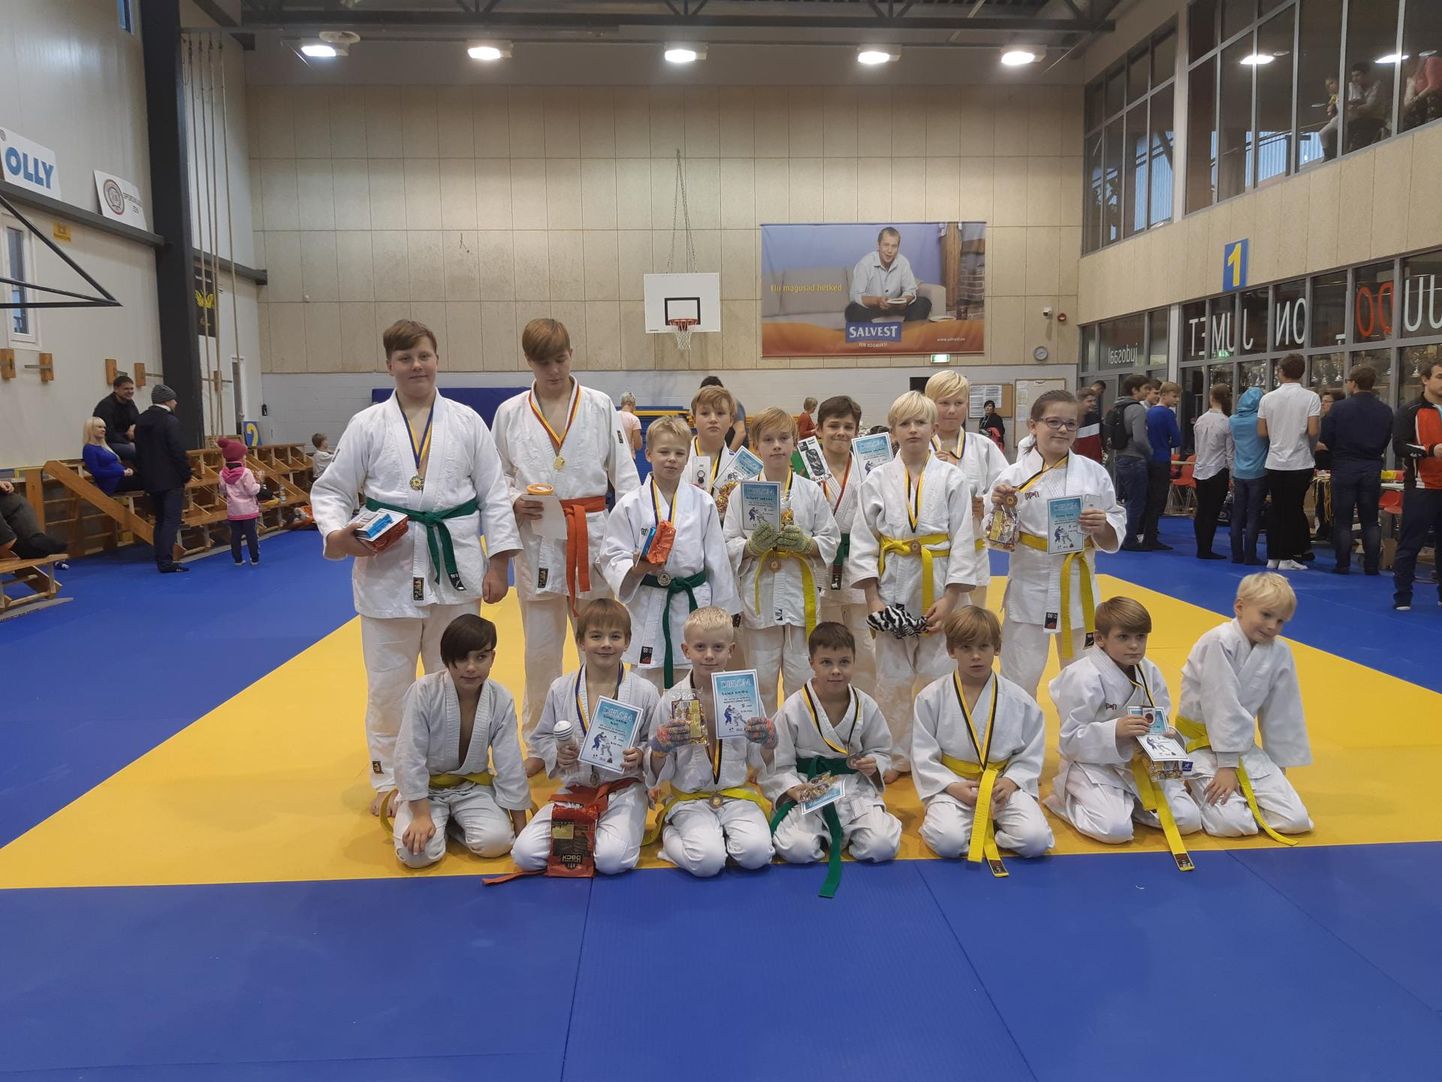 Edukad Pärnu judoklubi Samurai noorsportlased peale autasustamist.
 